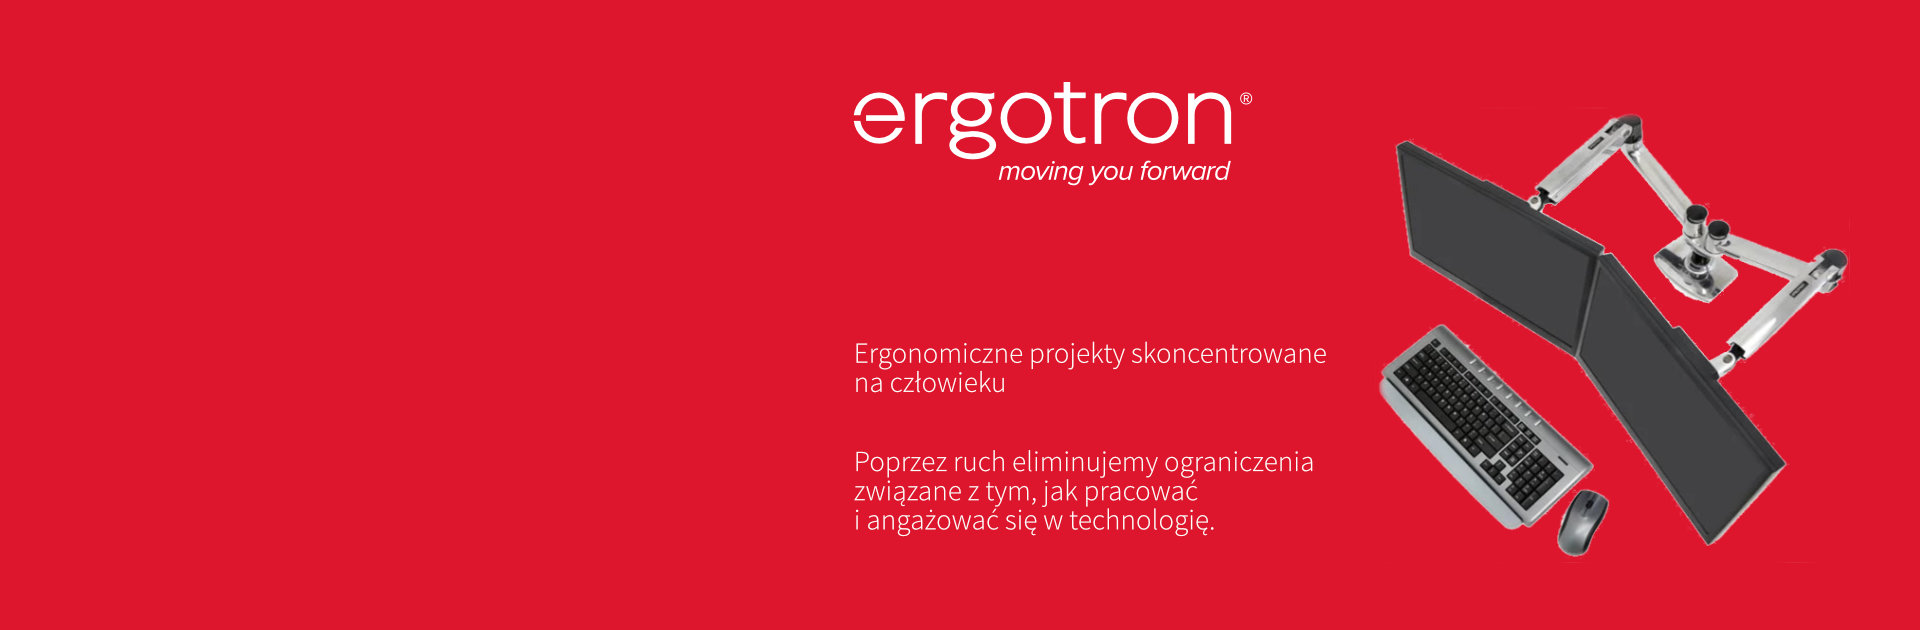 ergotron